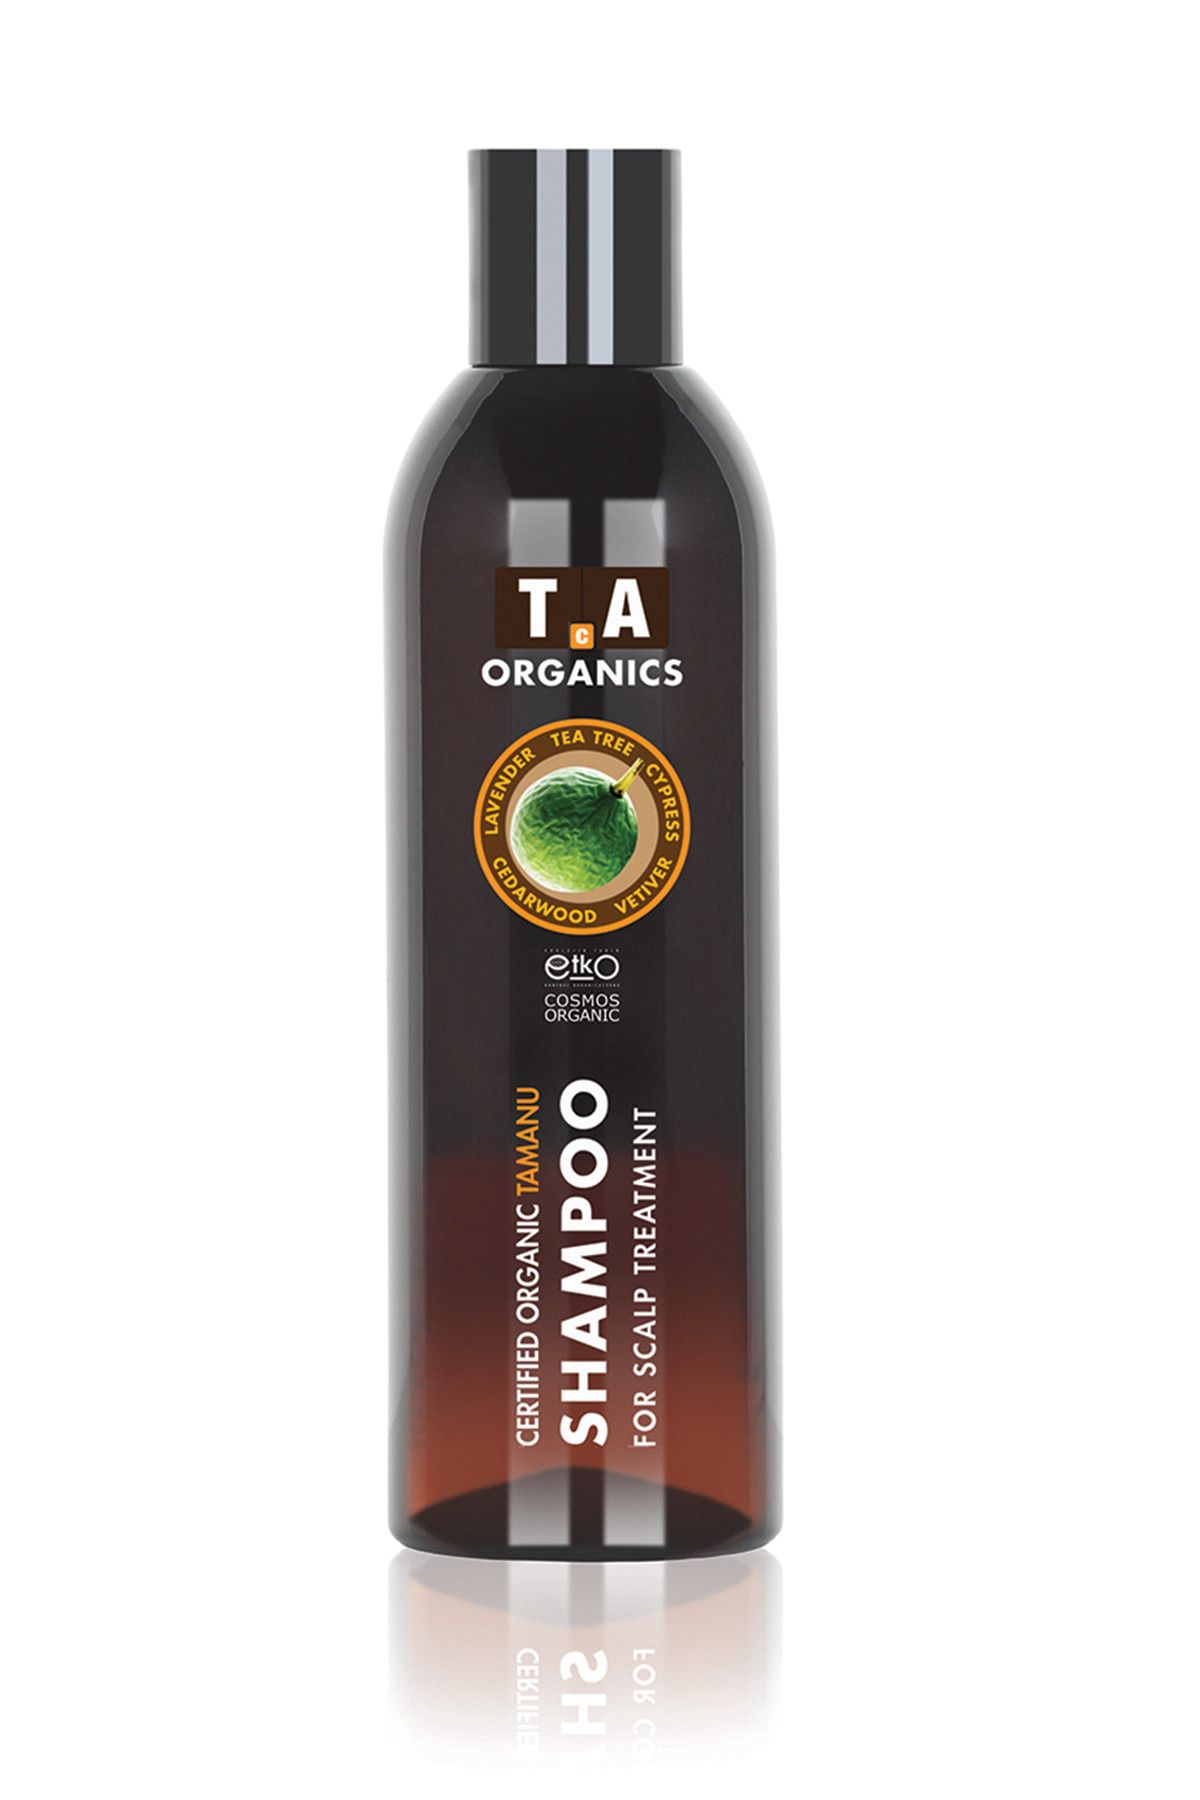 Tca Organics Şampuan - Tamanu Shampoo 250 ml 8680196180018